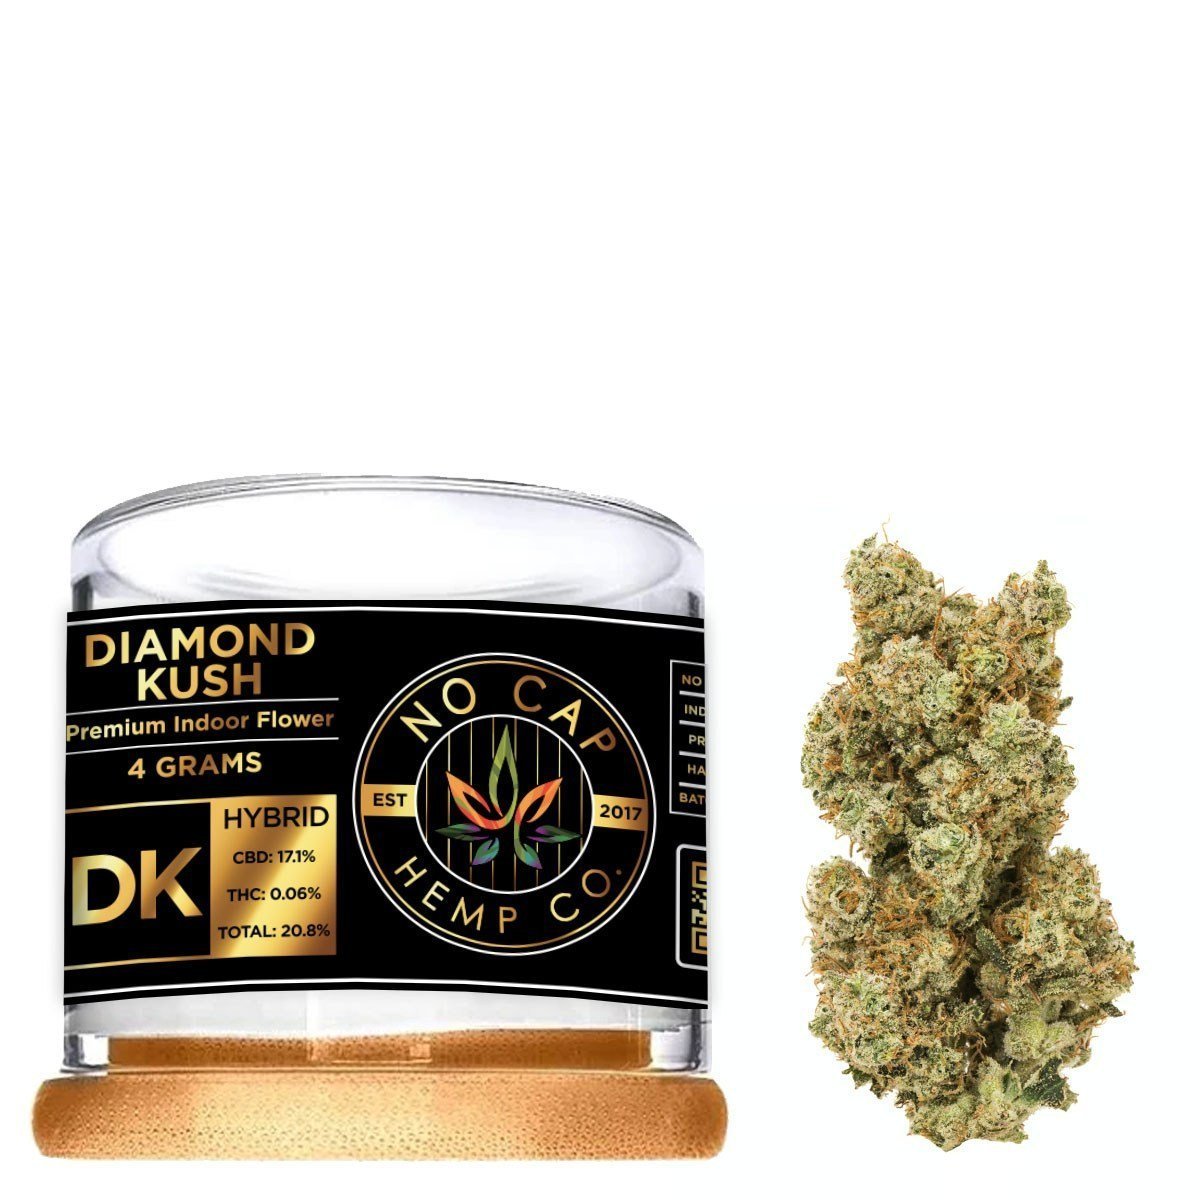 Black Label - Diamond Kush - 4 Gram Jar - No Cap Hemp Co.